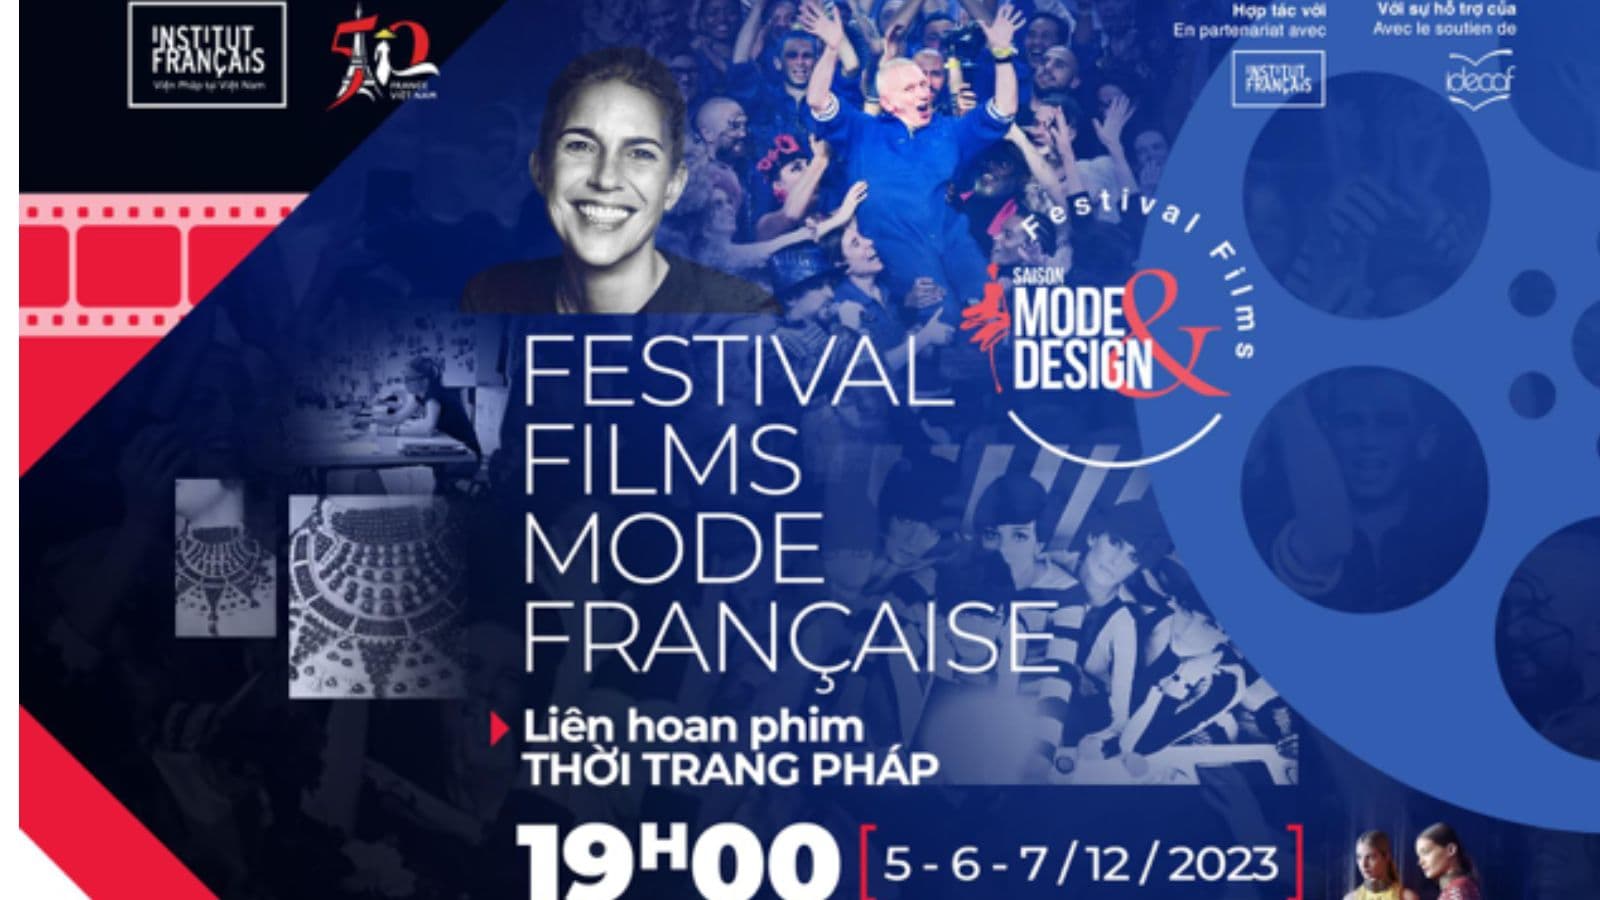 Liên hoan phim thời trang Pháp mở cửa cho công chúng thưởng thức từ 5-7/12 tại Idecaf 